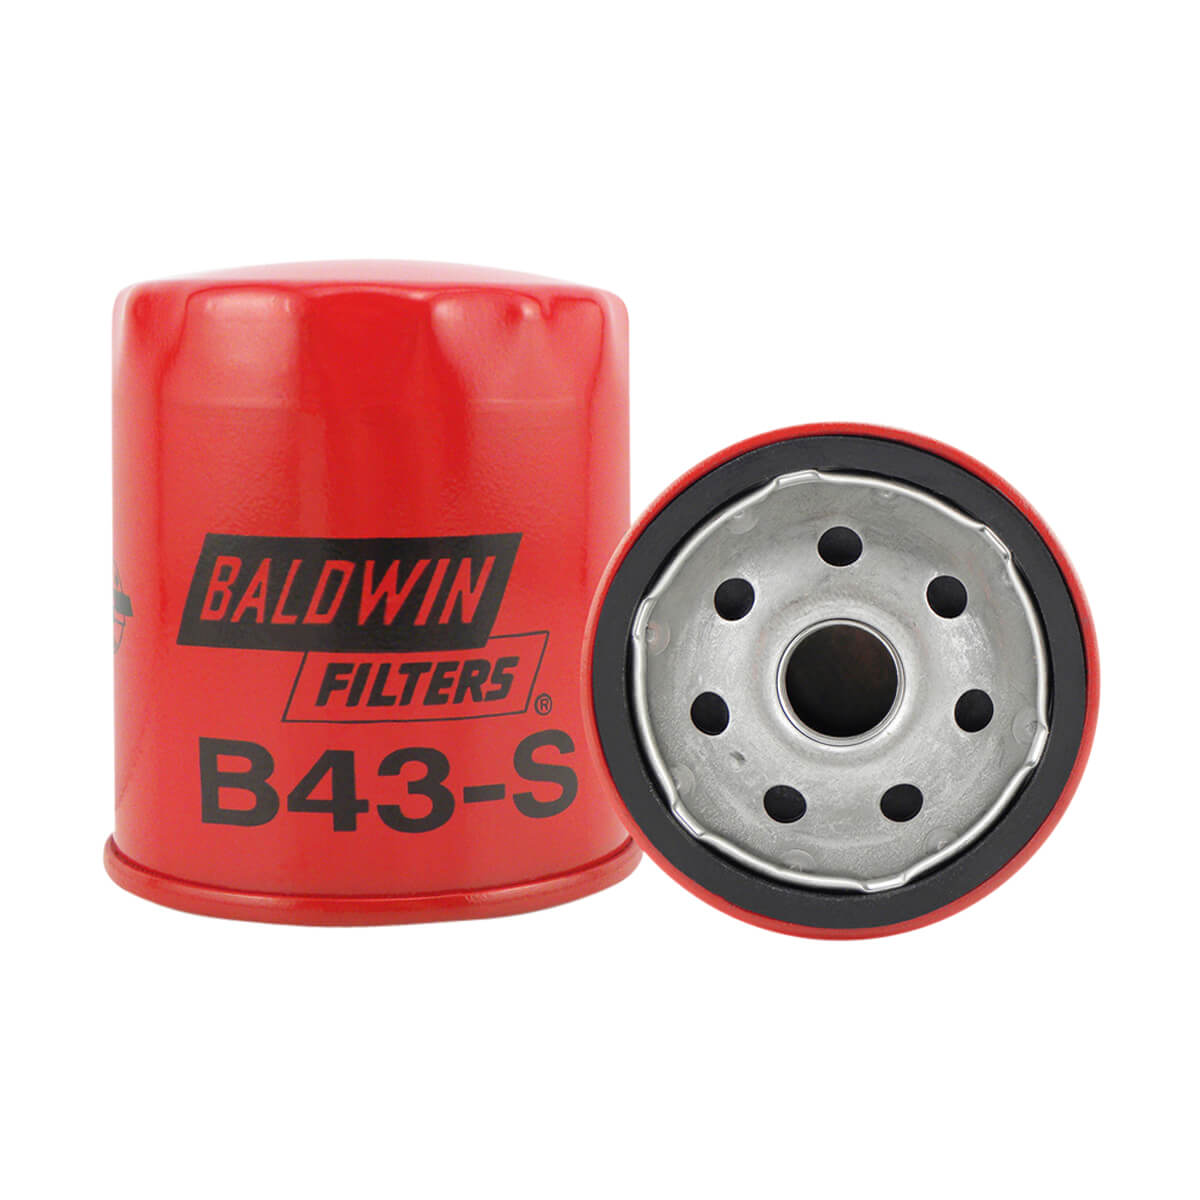 Baldwin Lube B43-S Filter